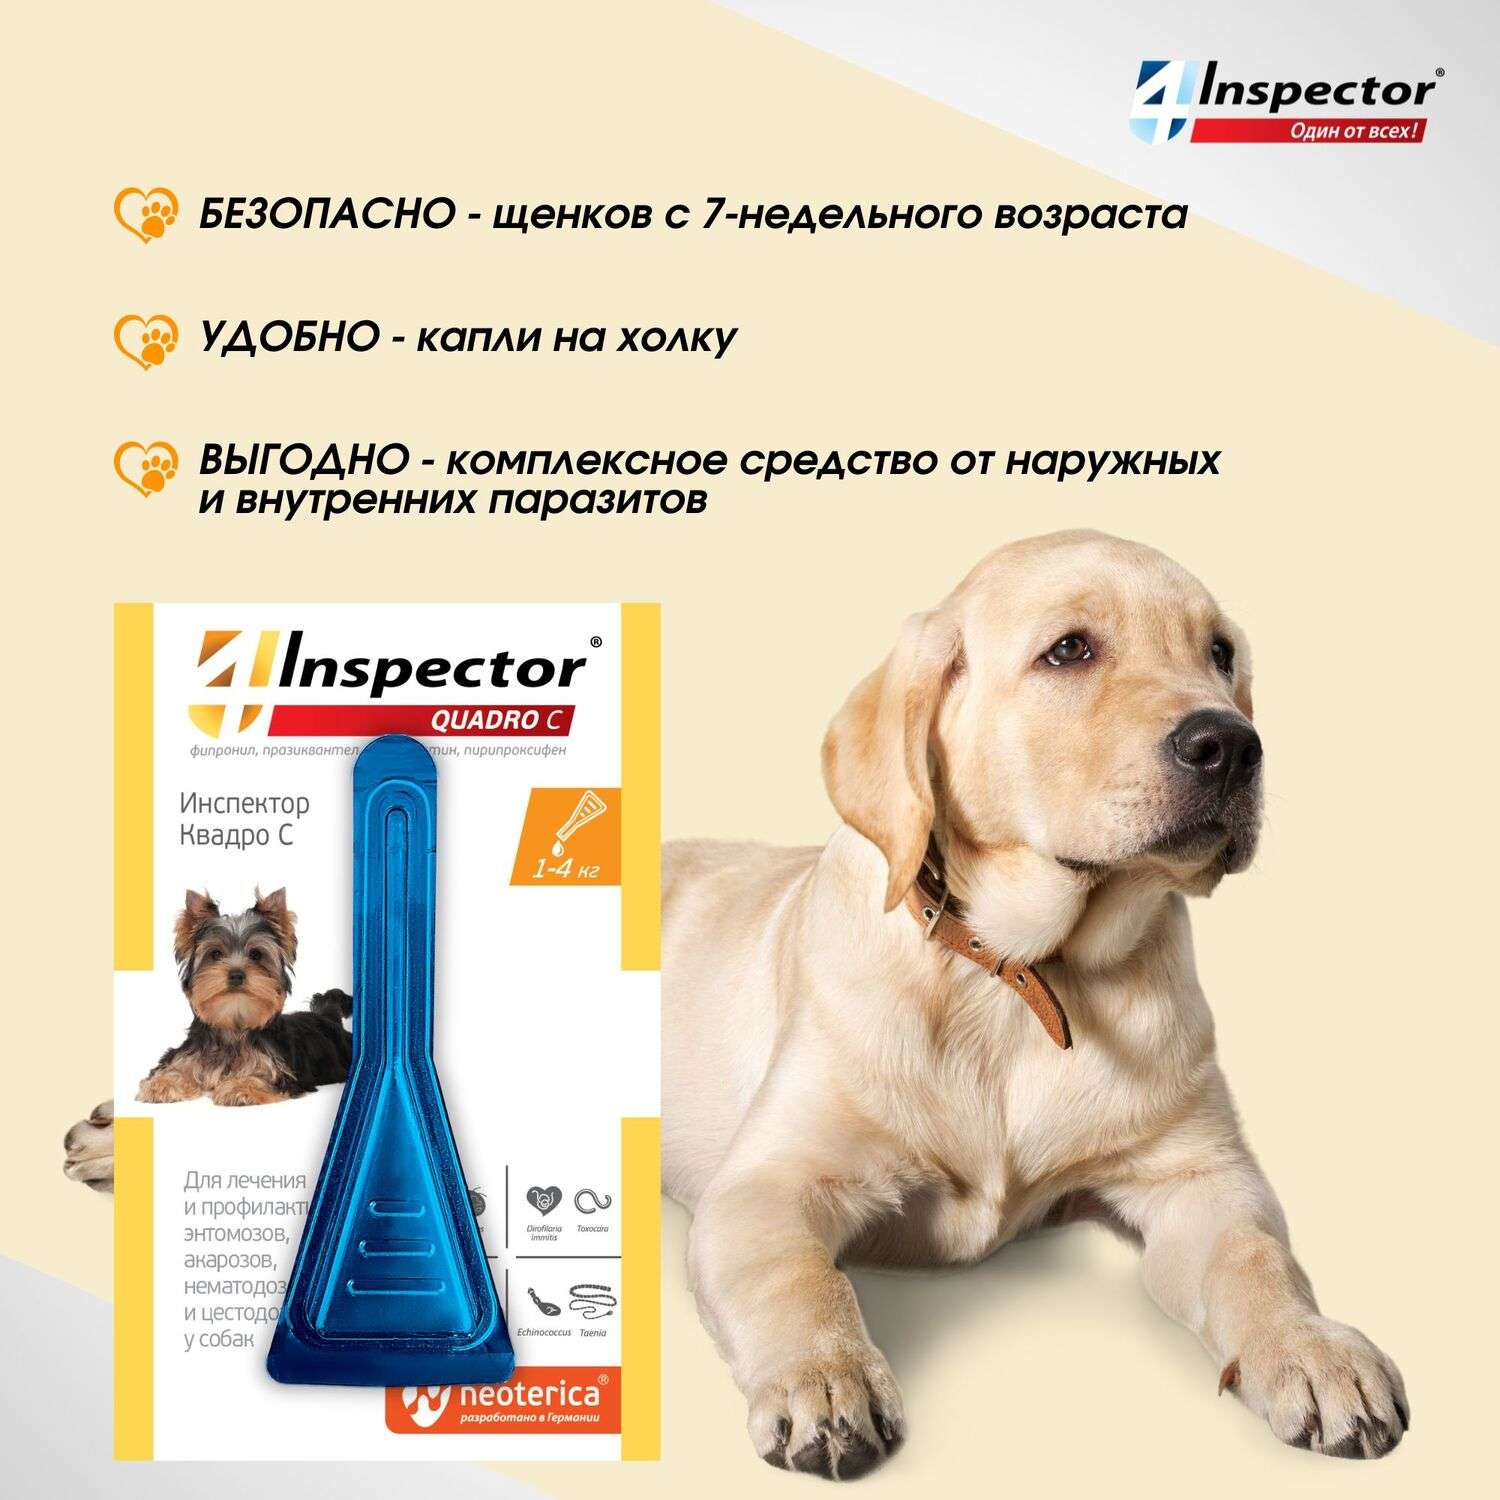 Капли для собак Inspector Quadro 1-4кг от наружных и внутренних паразитов 0.4мл - фото 6